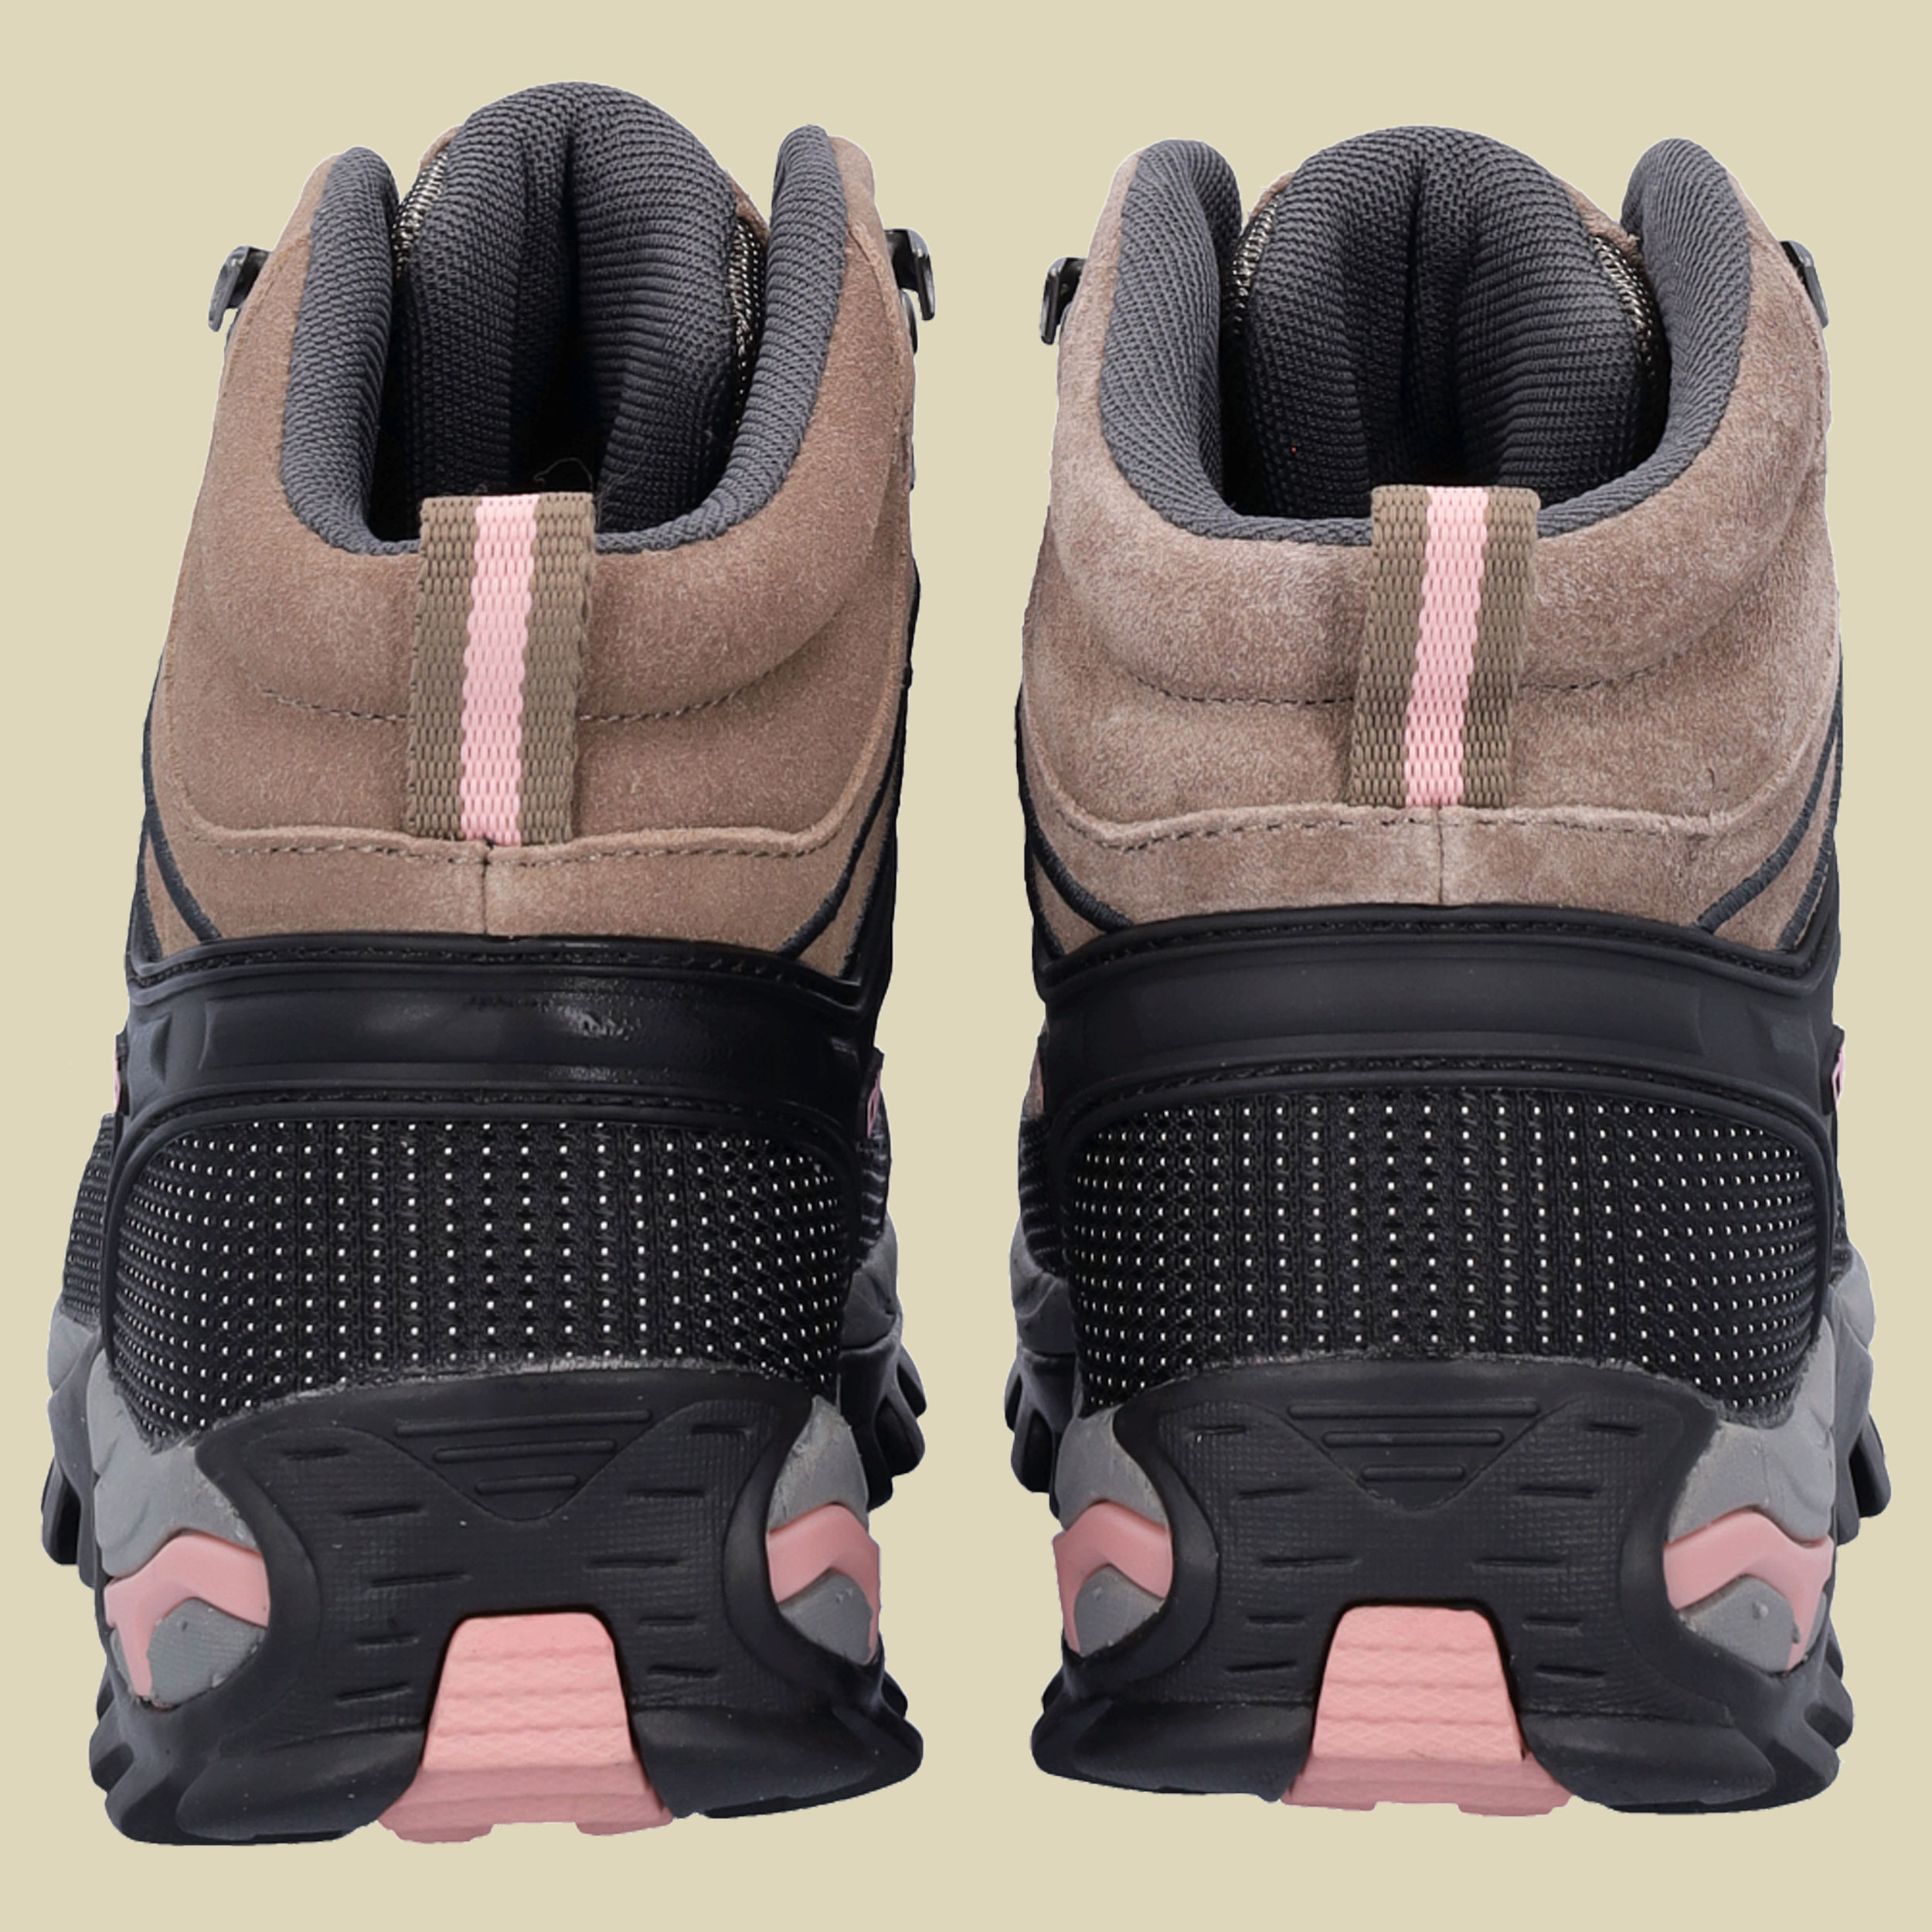 Rigel Mid WMN Trekking Shoes WP Women Größe 40 Farbe P430 cenere